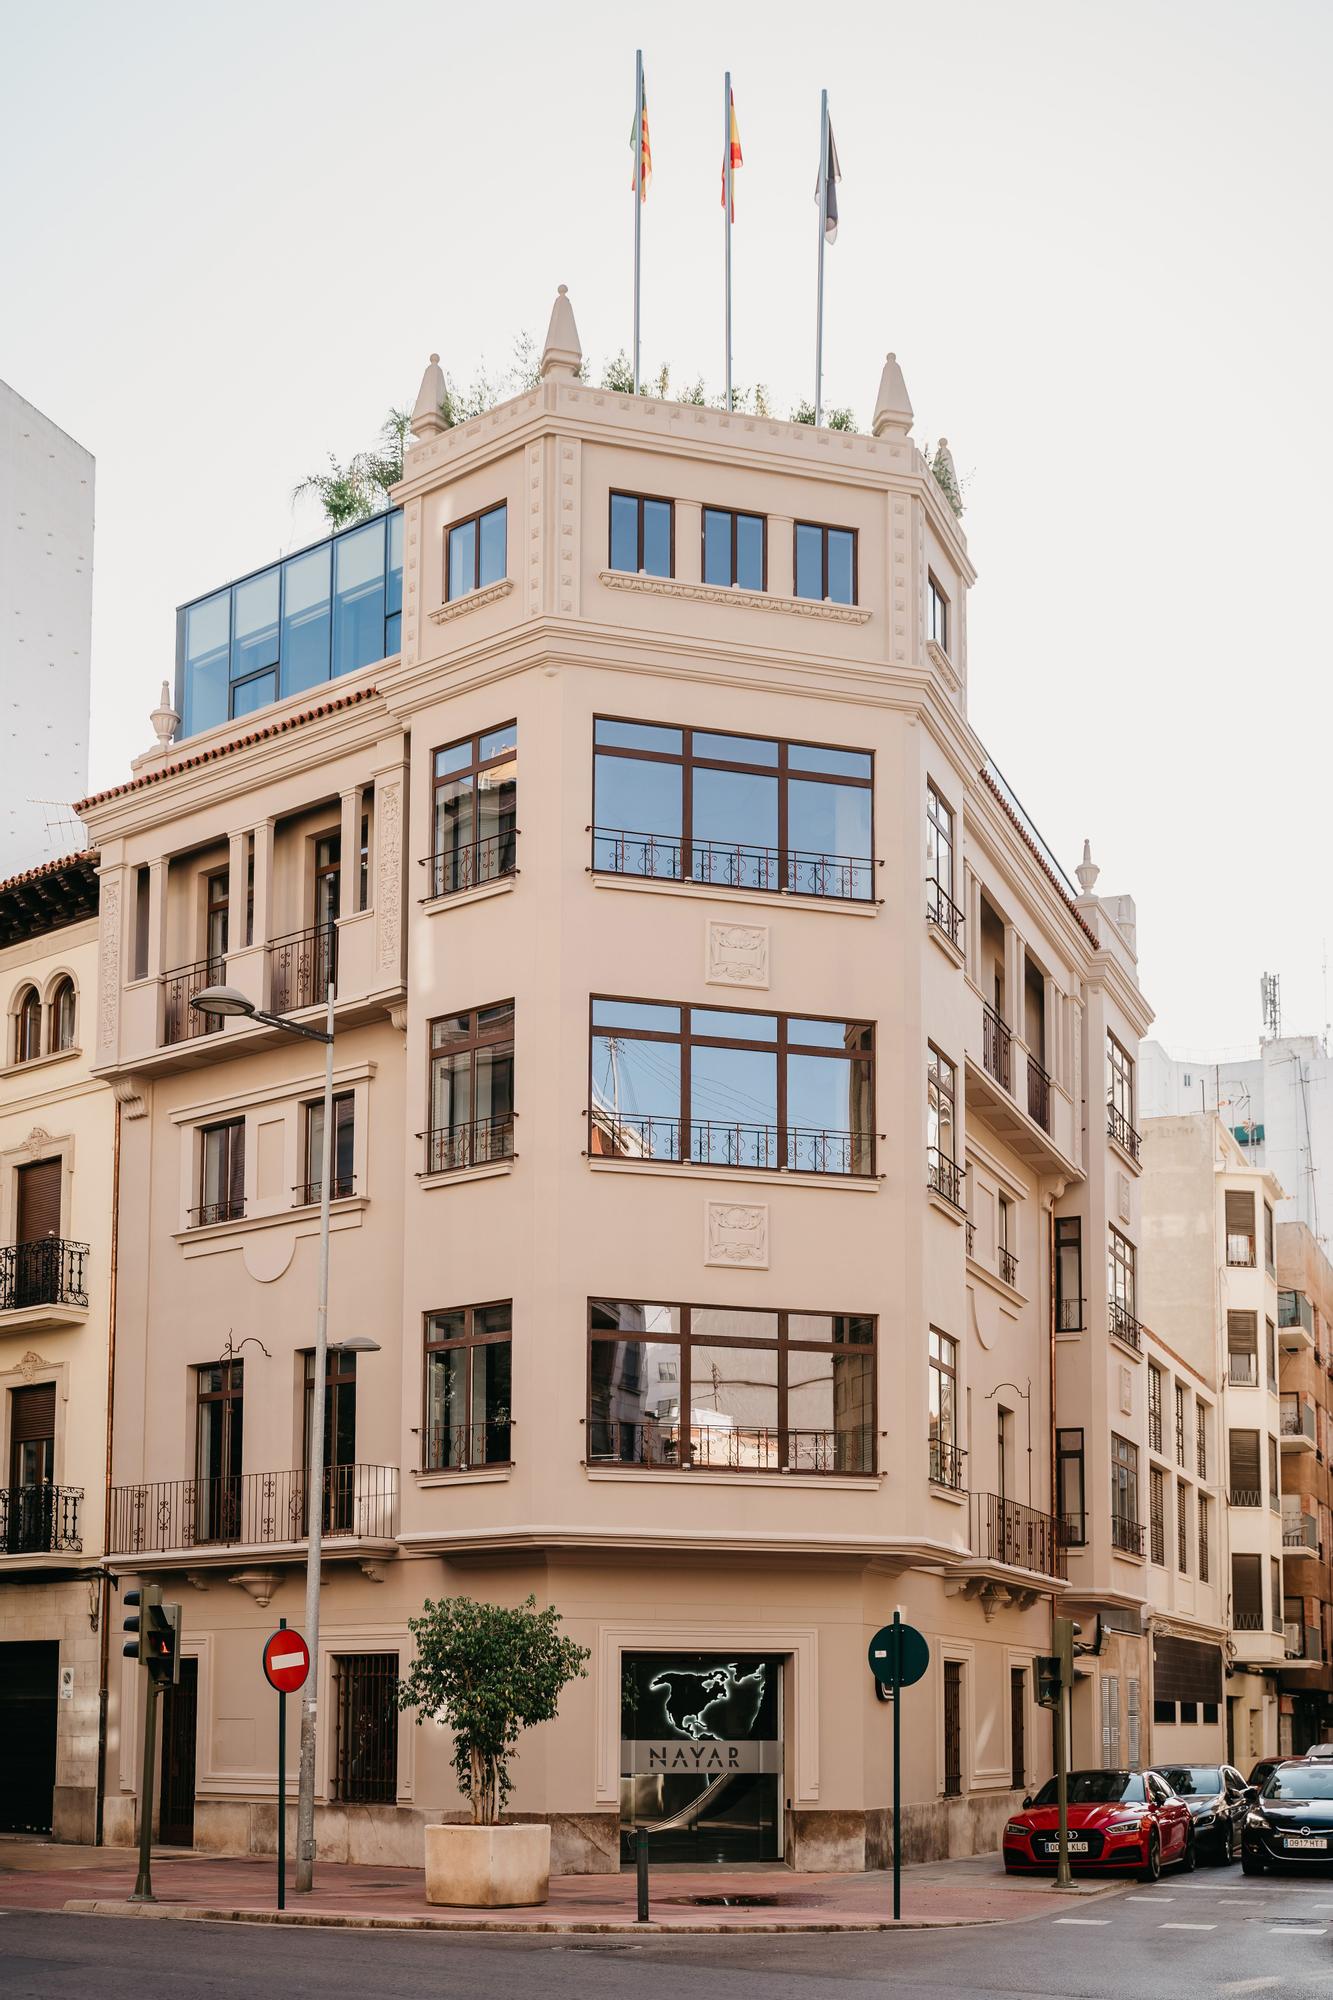 La compañía, con sedes en Castelló y en Shanghái, inauguró en 2019 Nayar Building, un edificio histórico de principios del siglo XX diseñado por Francisco Maristany y ubicado en el centro de la ciudad.